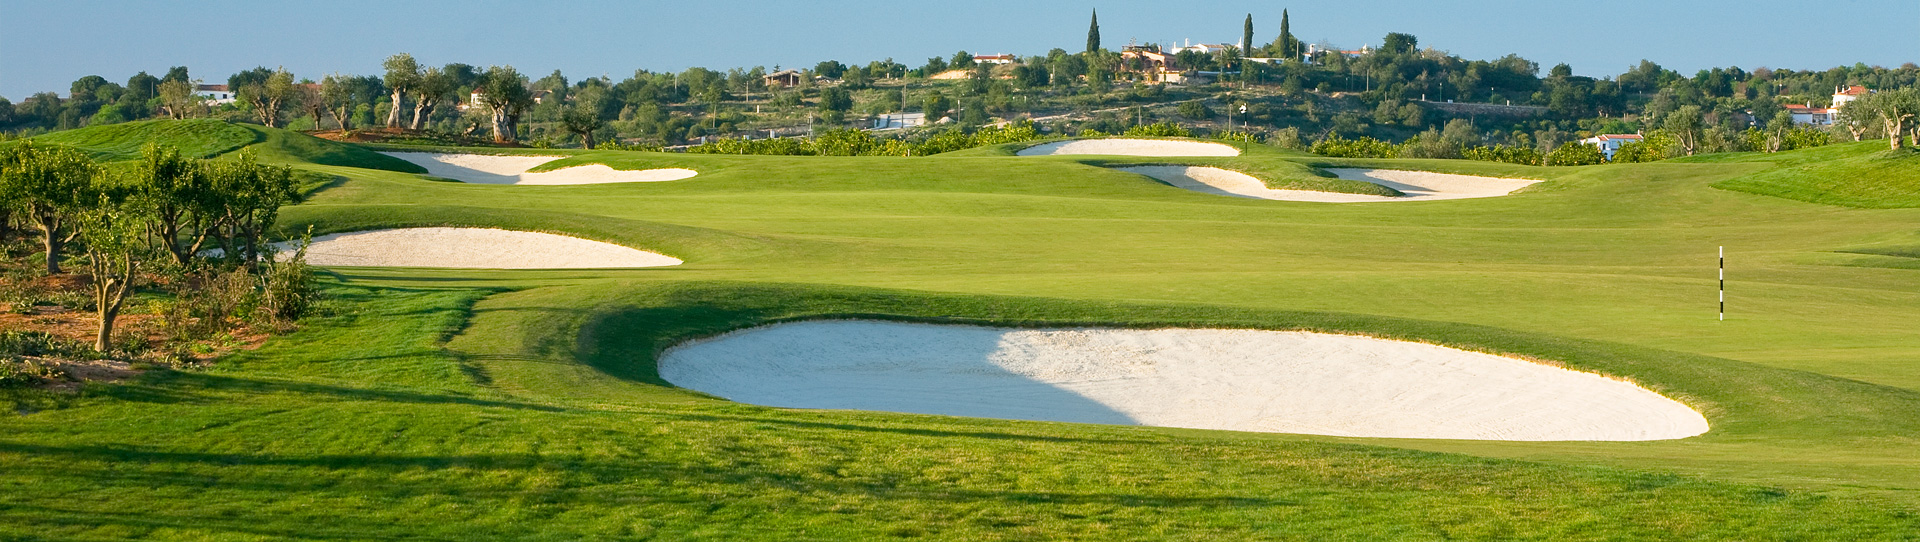 Portugal golf courses - Amendoeira O’Connor Jnr. - Photo 2